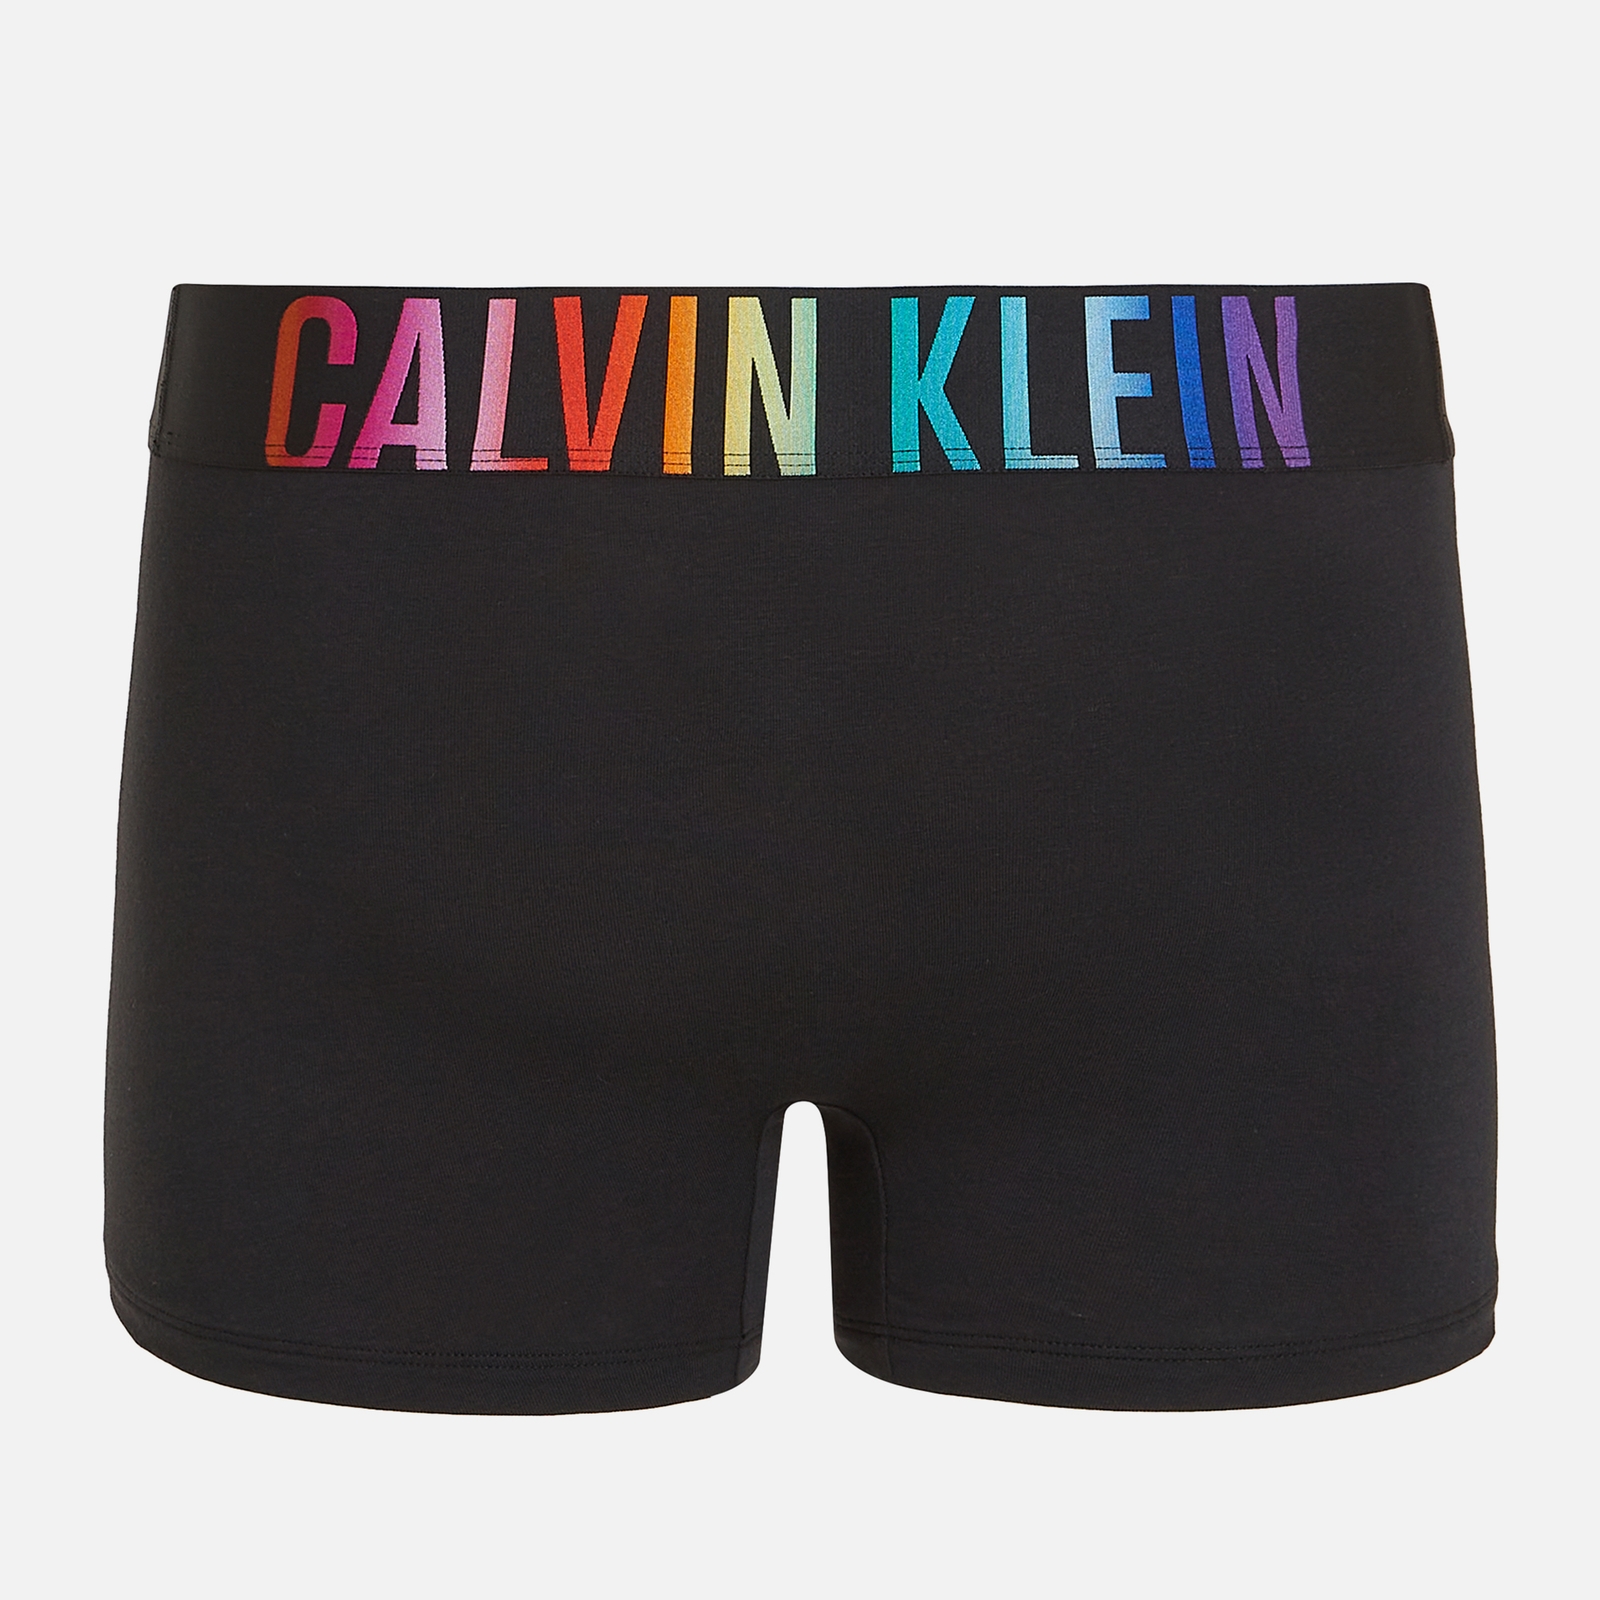 Calvin Klein Intense Power Pride Stretch Cotton-Blend Trunks